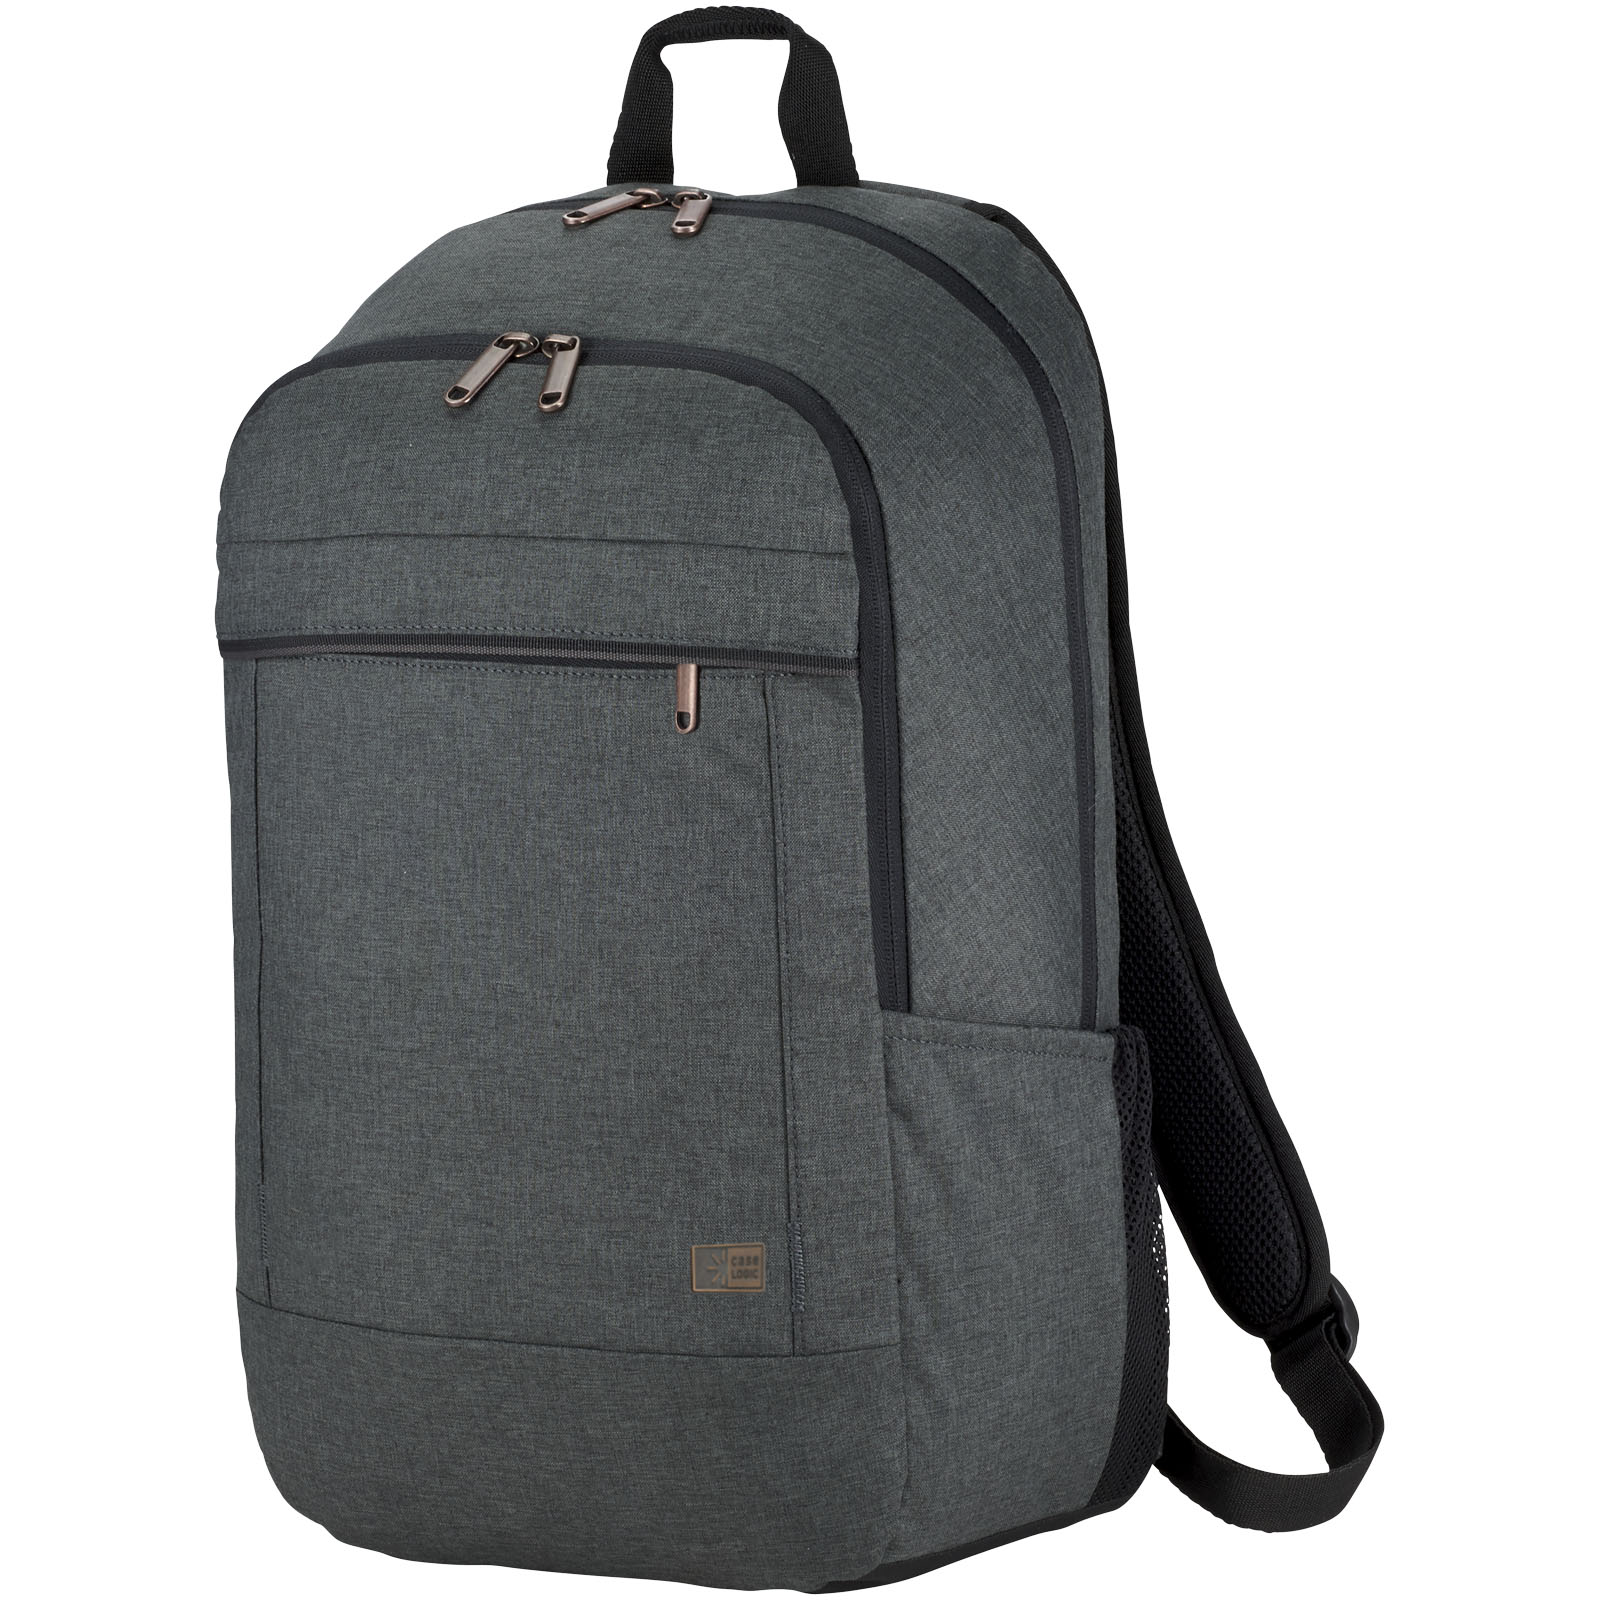 Advertising Laptop Backpacks - Case Logic Era 15